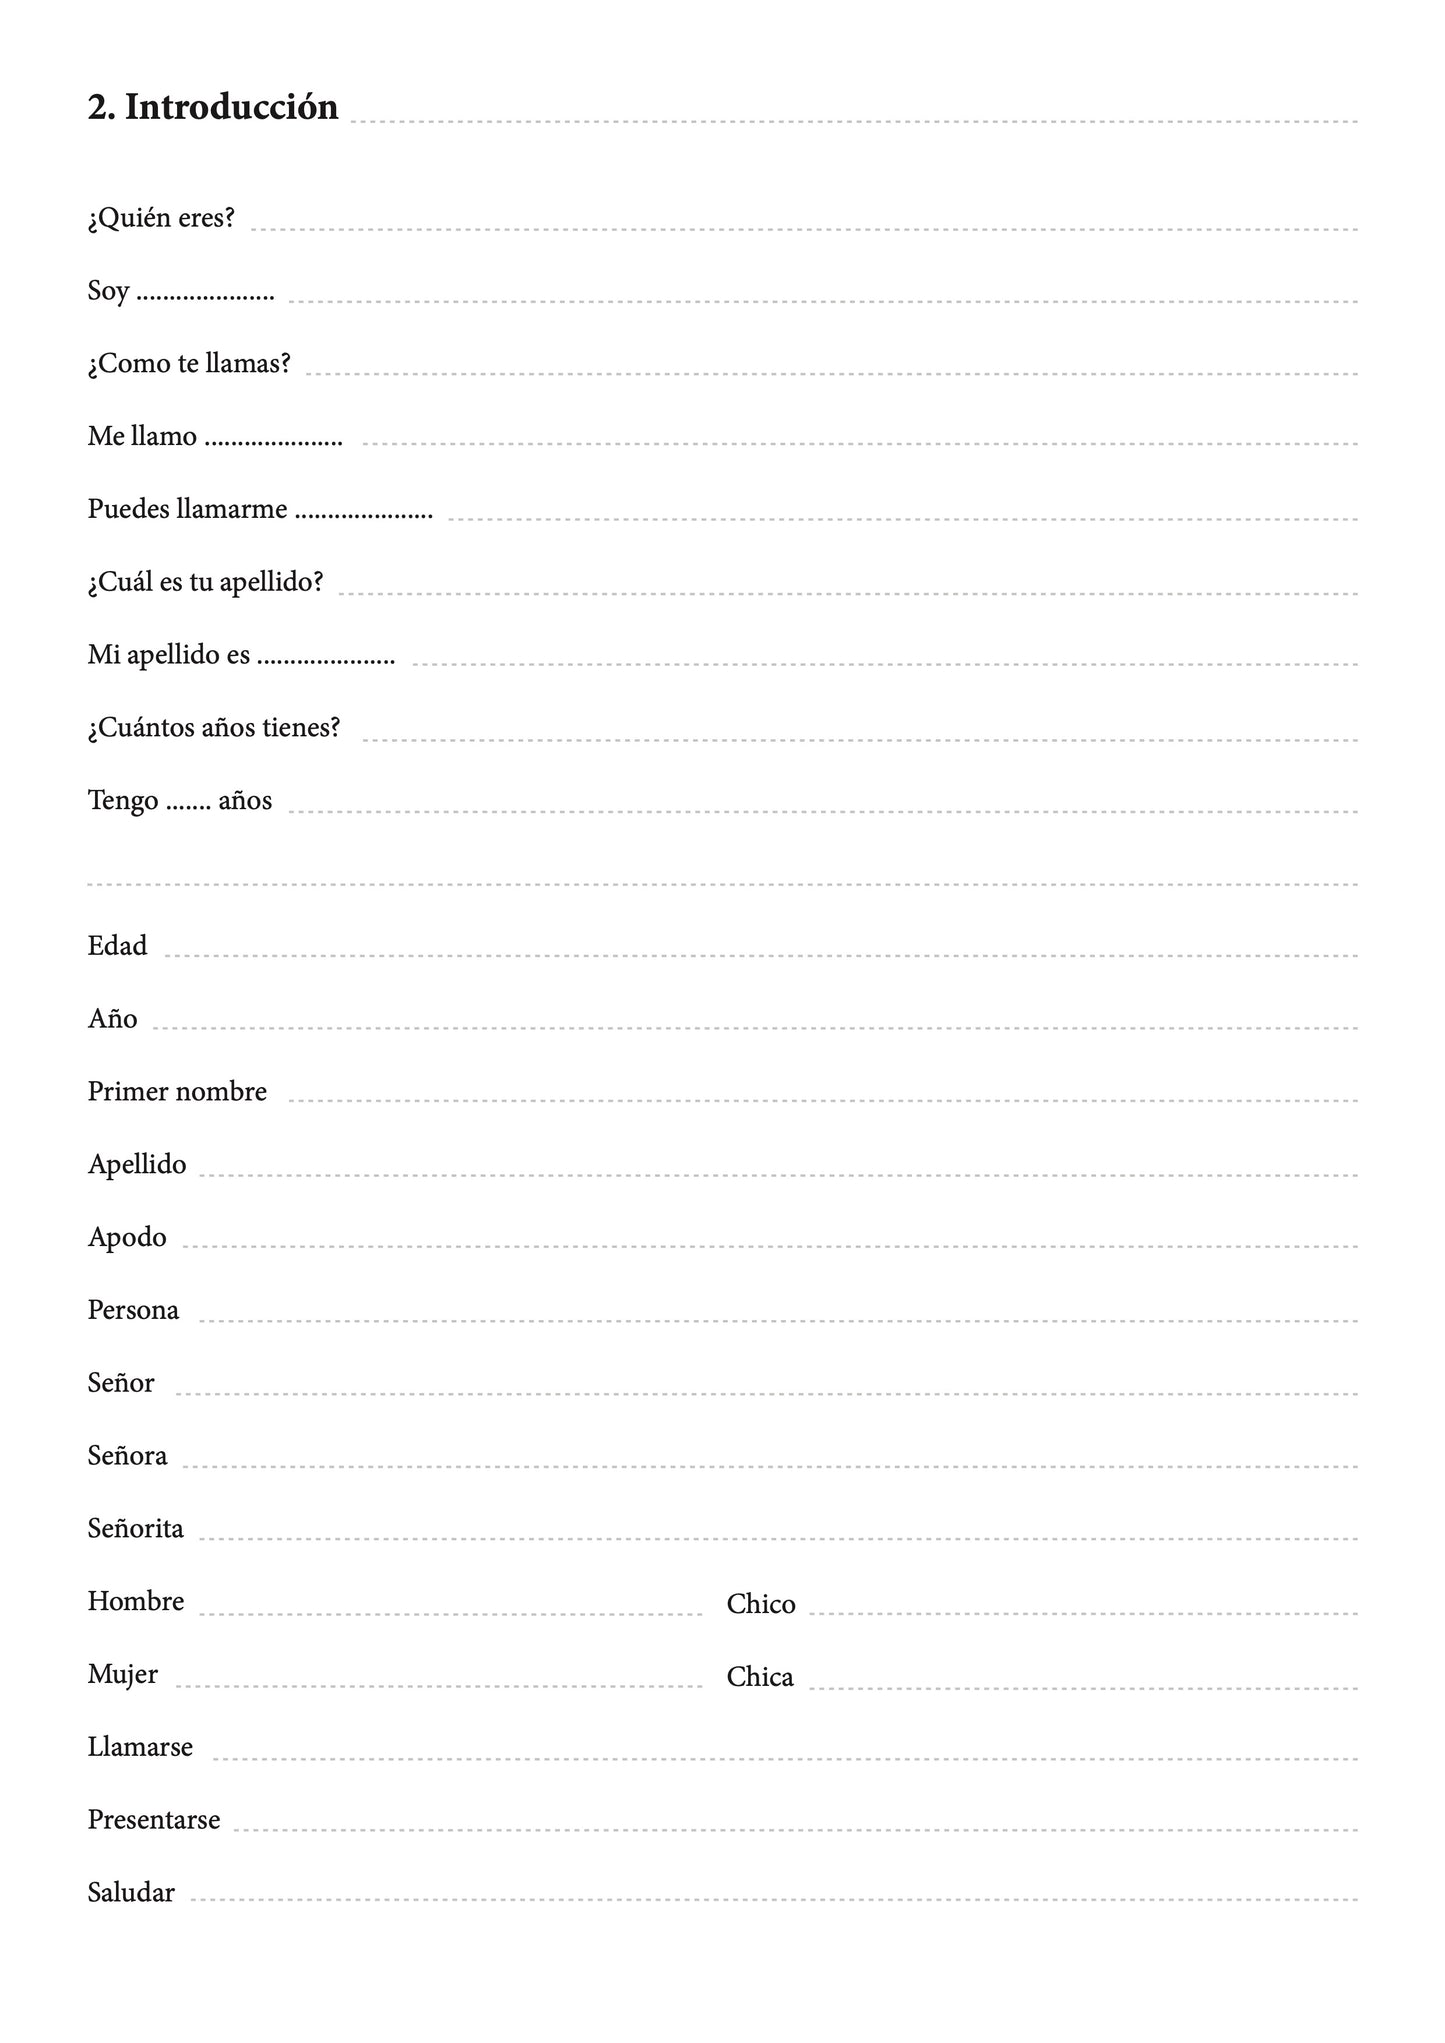 Español-turcomano cuaderno de vocabulario